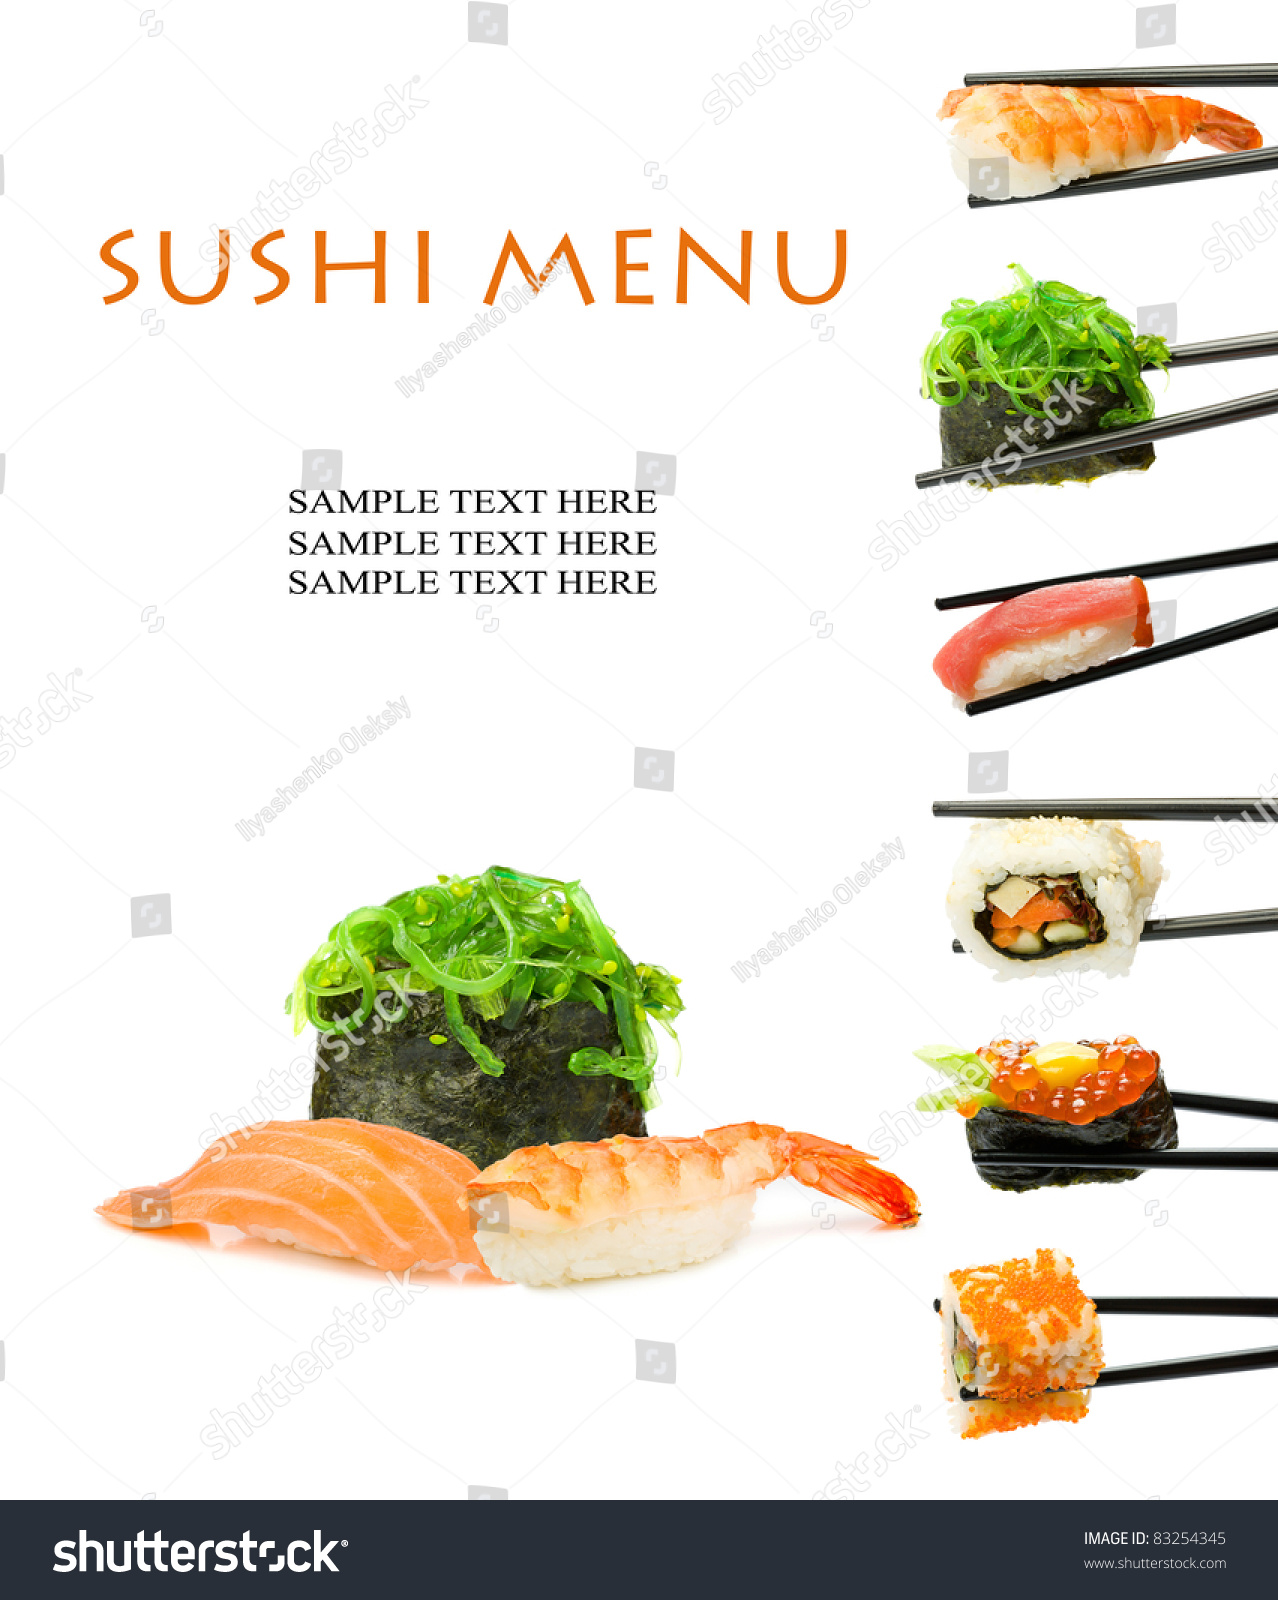 Here sushi меню. Сашими меню. Чиз хот мир суши меню. Creative sushi pictures. Суши сам меню